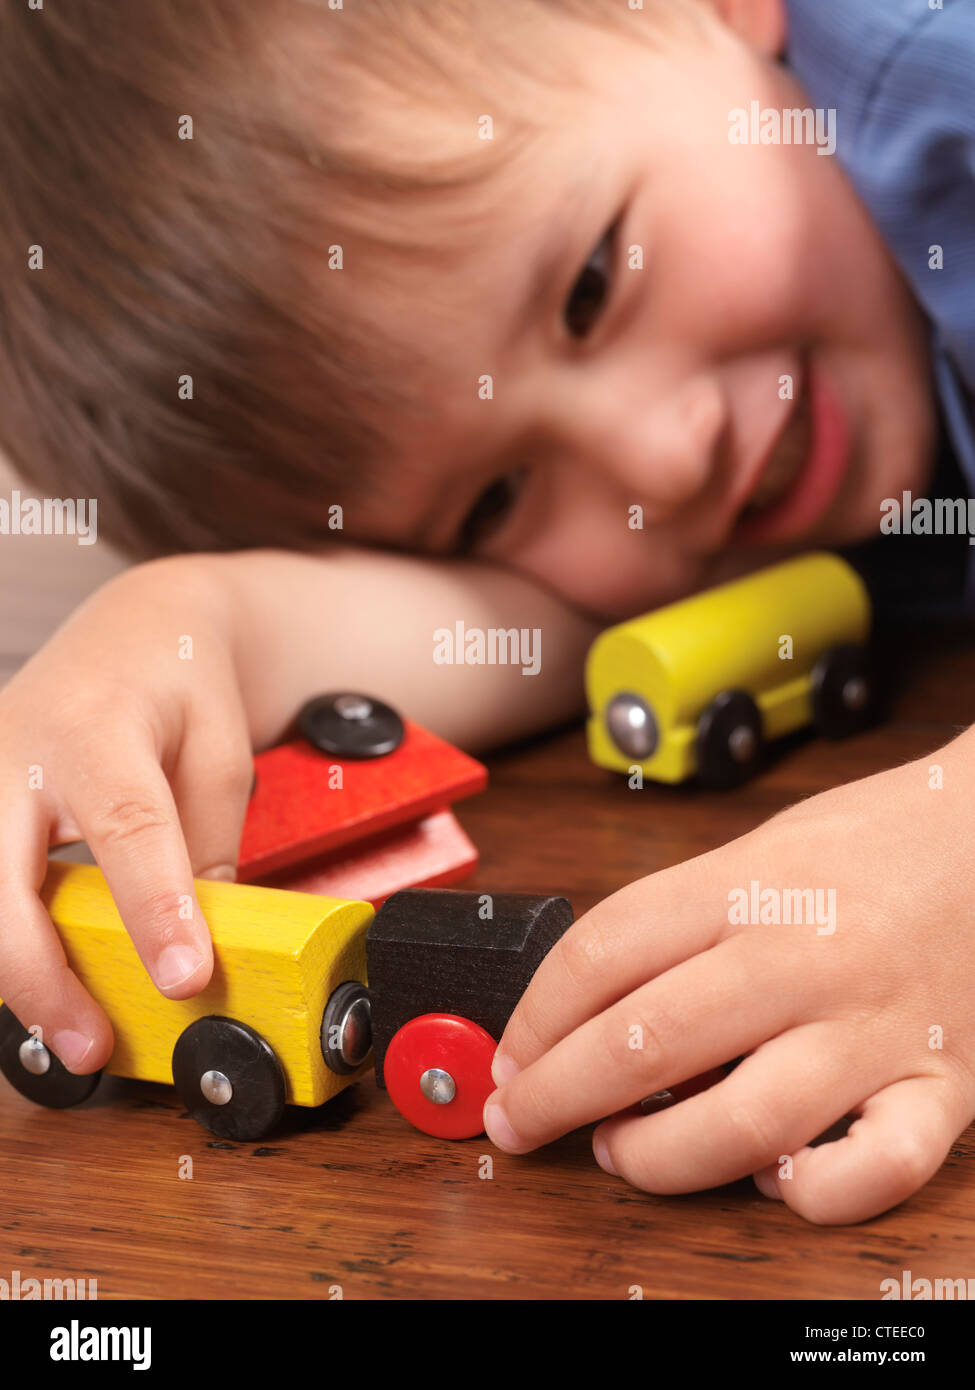 Glücklich zwei Jahre alten Jungen spielen mit einem bunten Spielzeugzug auf Parkett Stockfoto